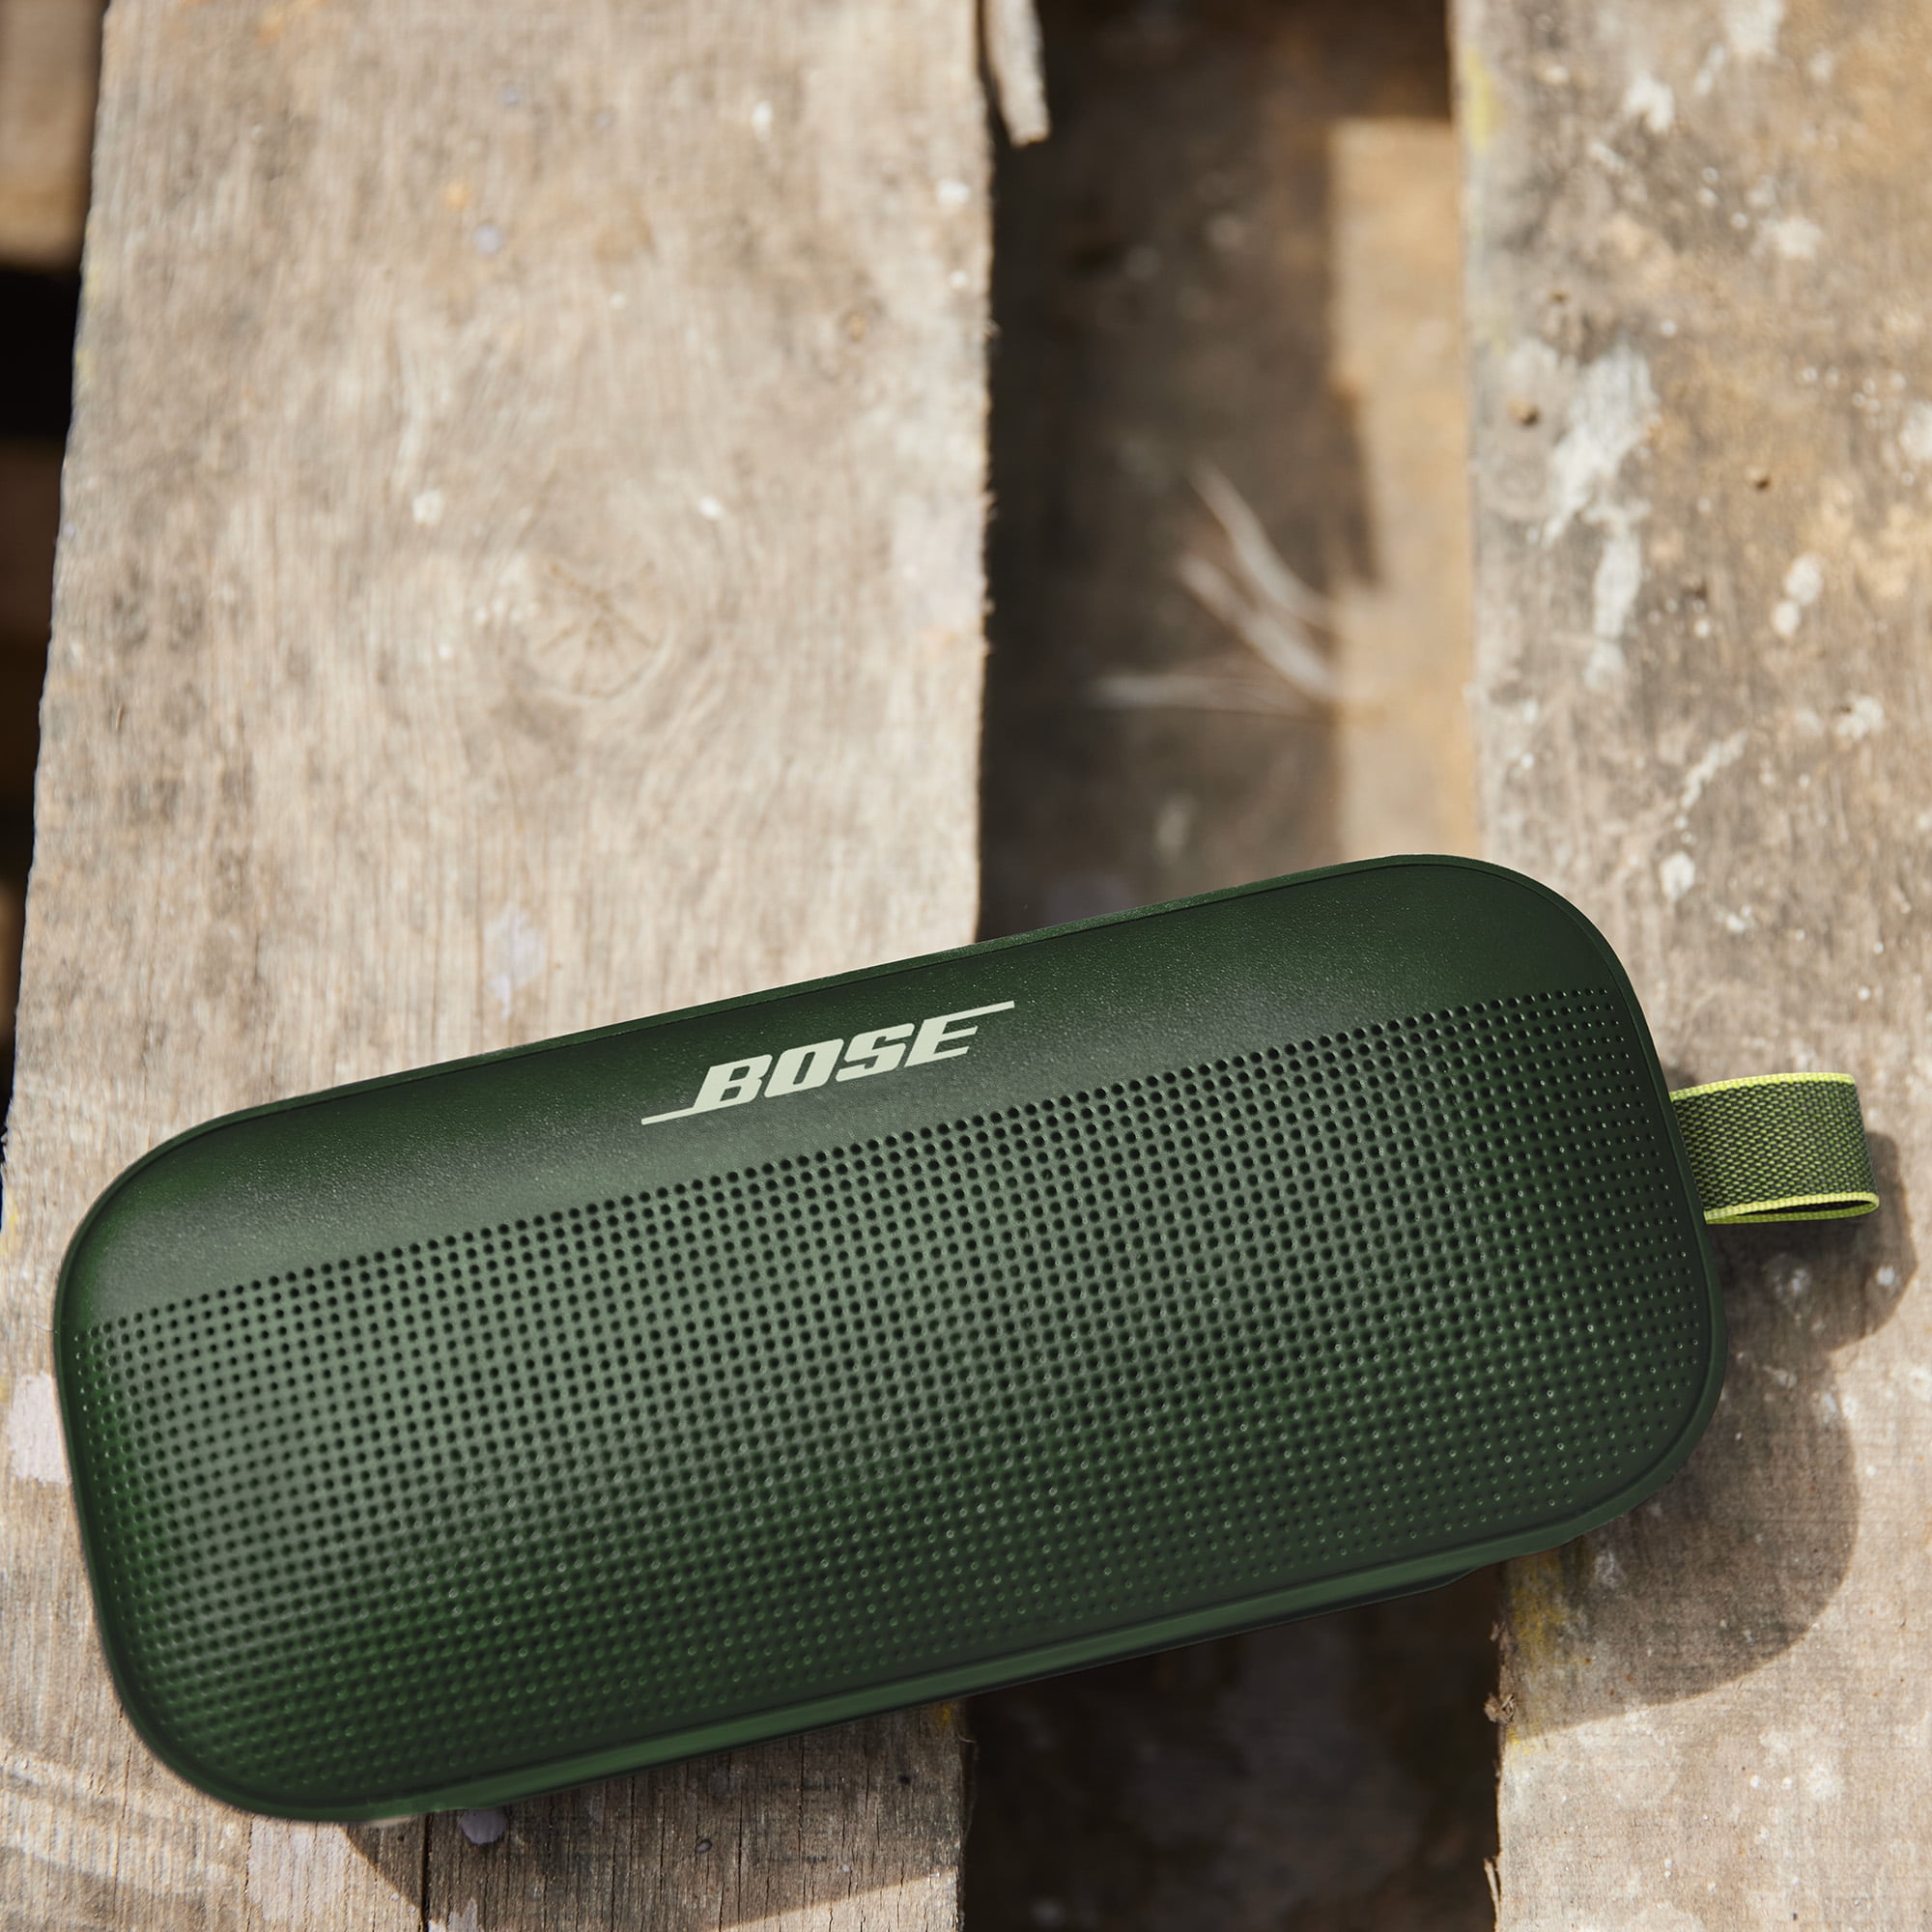 Waterproof Portable Bluetooth Flex Green Speaker, Wireless Cypress SoundLink Bose